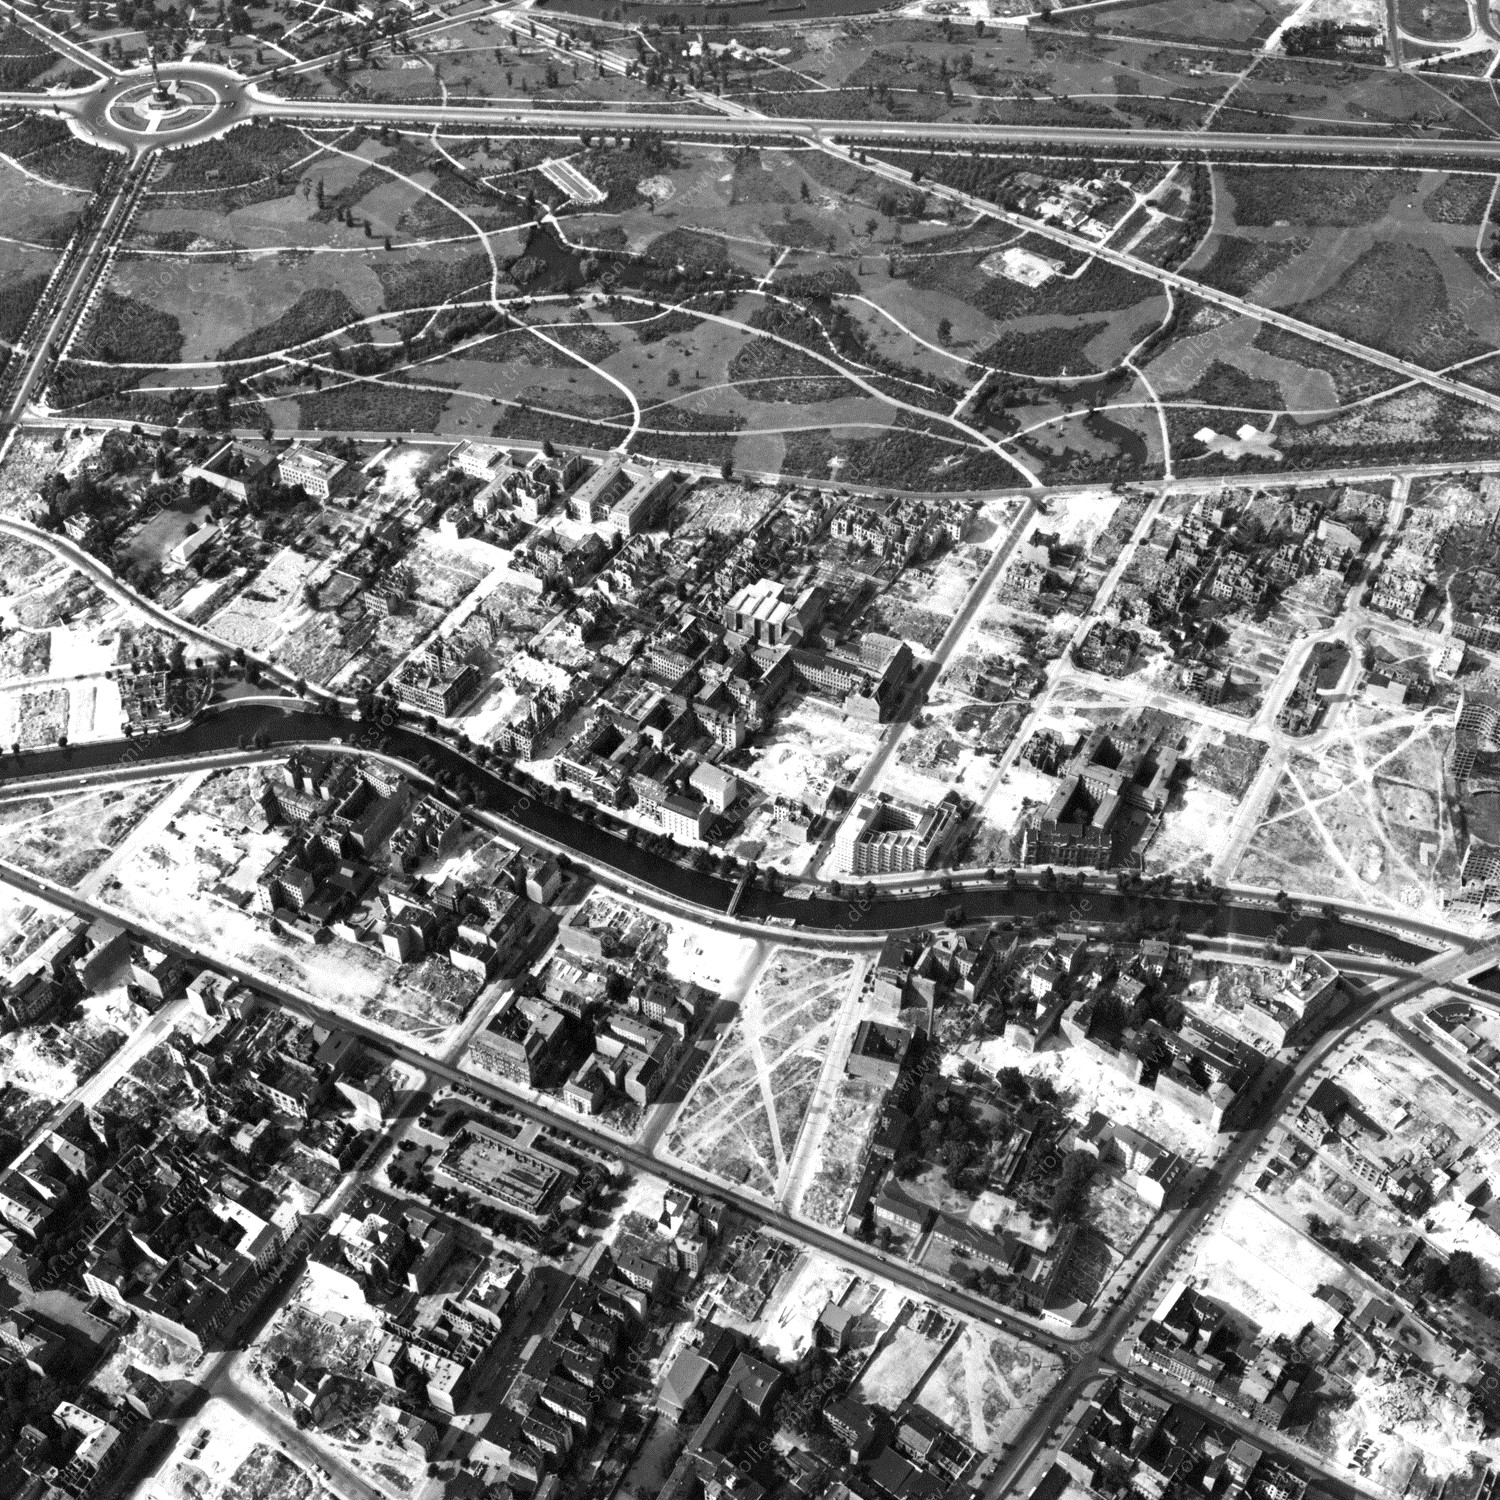 Alte Fotos und Luftbilder von Berlin - Luftbildaufnahme Nr. 01 - Historische Luftaufnahmen von West-Berlin aus dem Jahr 1954 - Flugstrecke Yankee